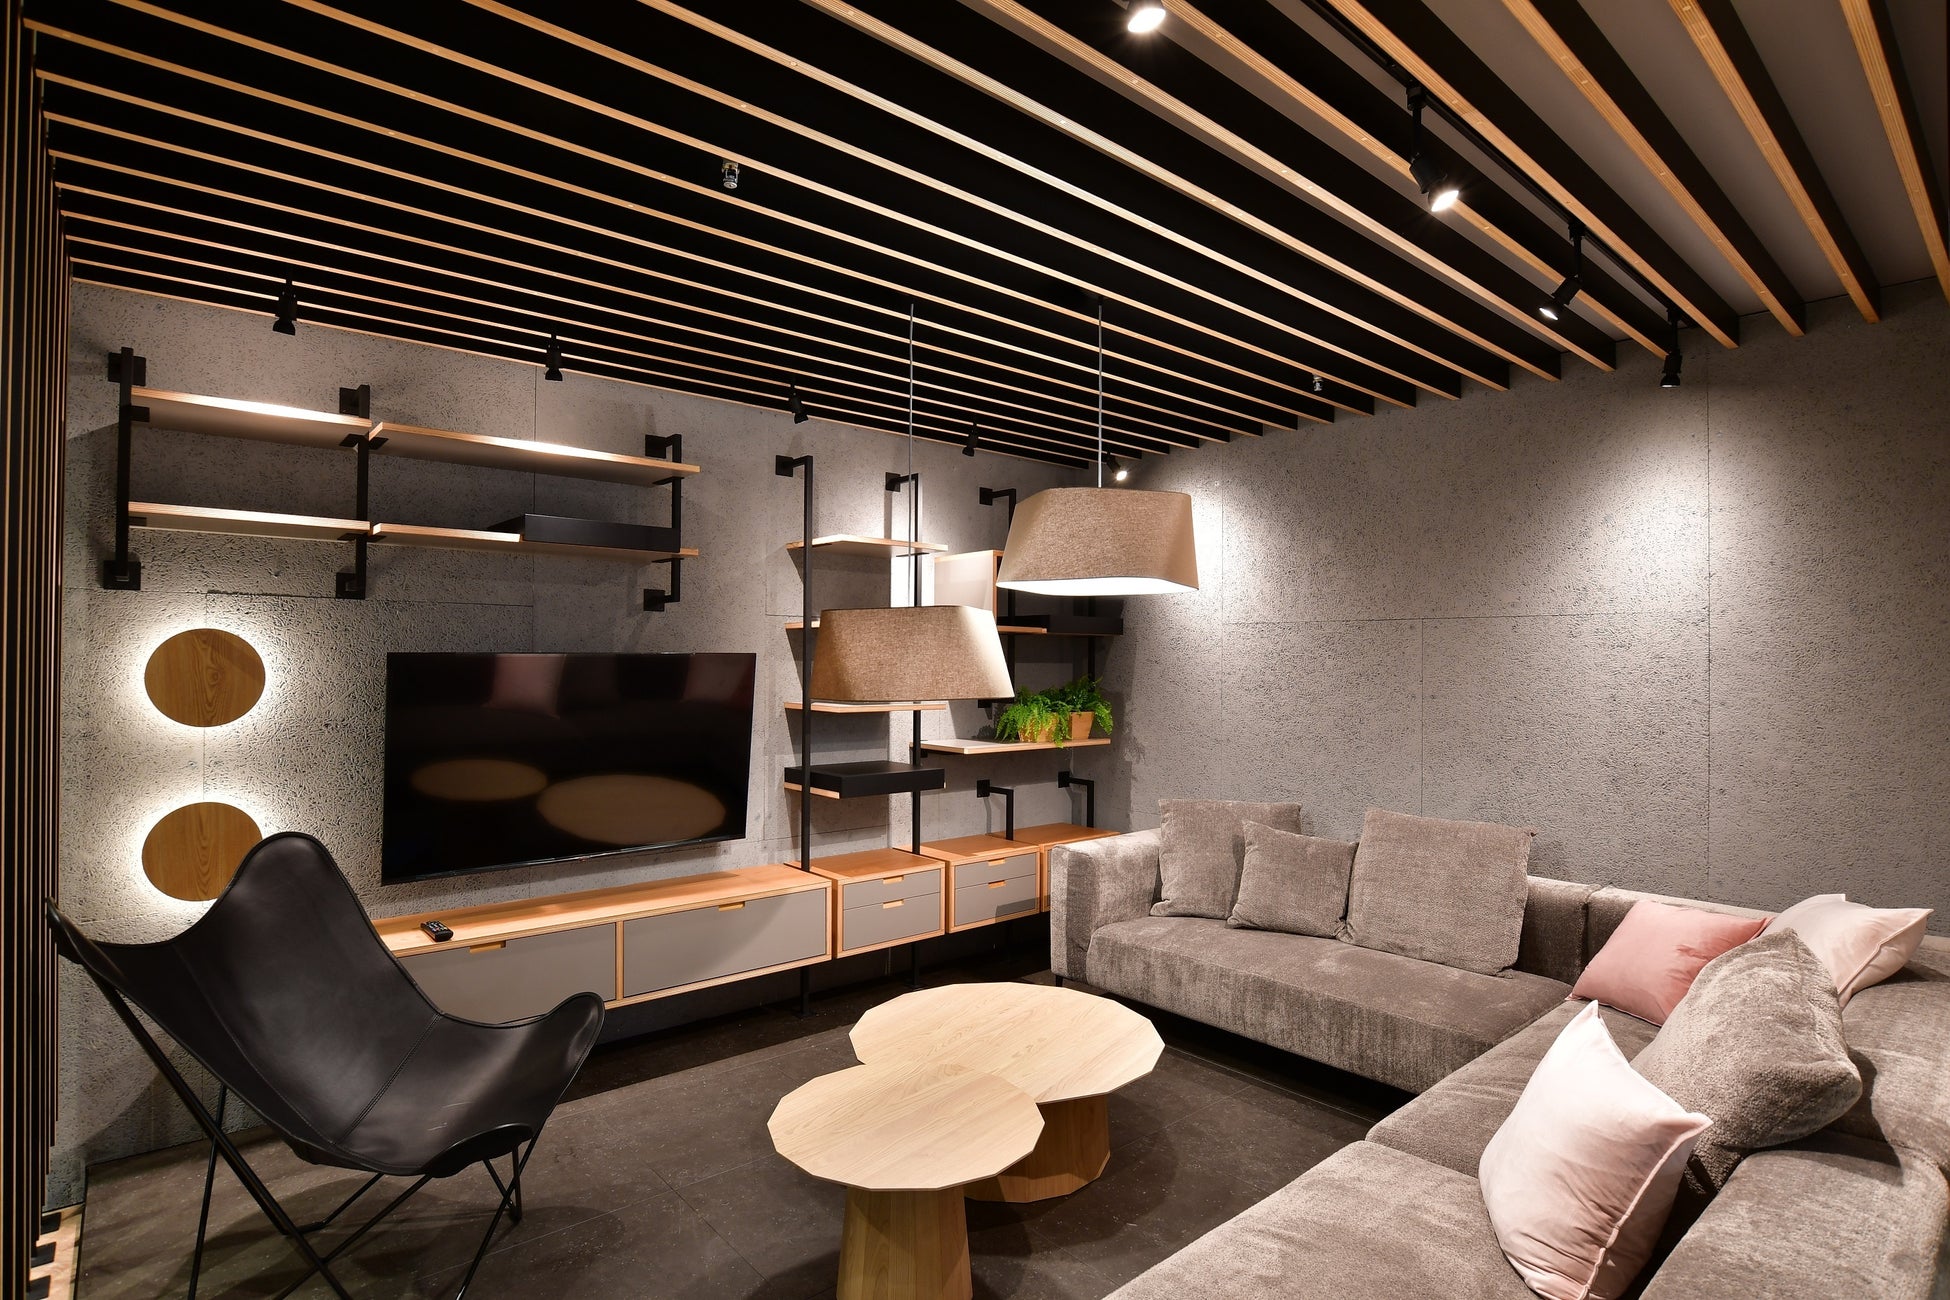 ポラスの分譲住宅B/N戸田公園が「AＩ型全館空調とスマートシステムによる住宅内の室温コントロール及び省エネ化の有効性を実証するプロジェクト」として「次世代住宅プロジェクト2023」にて採択されました。のサブ画像7